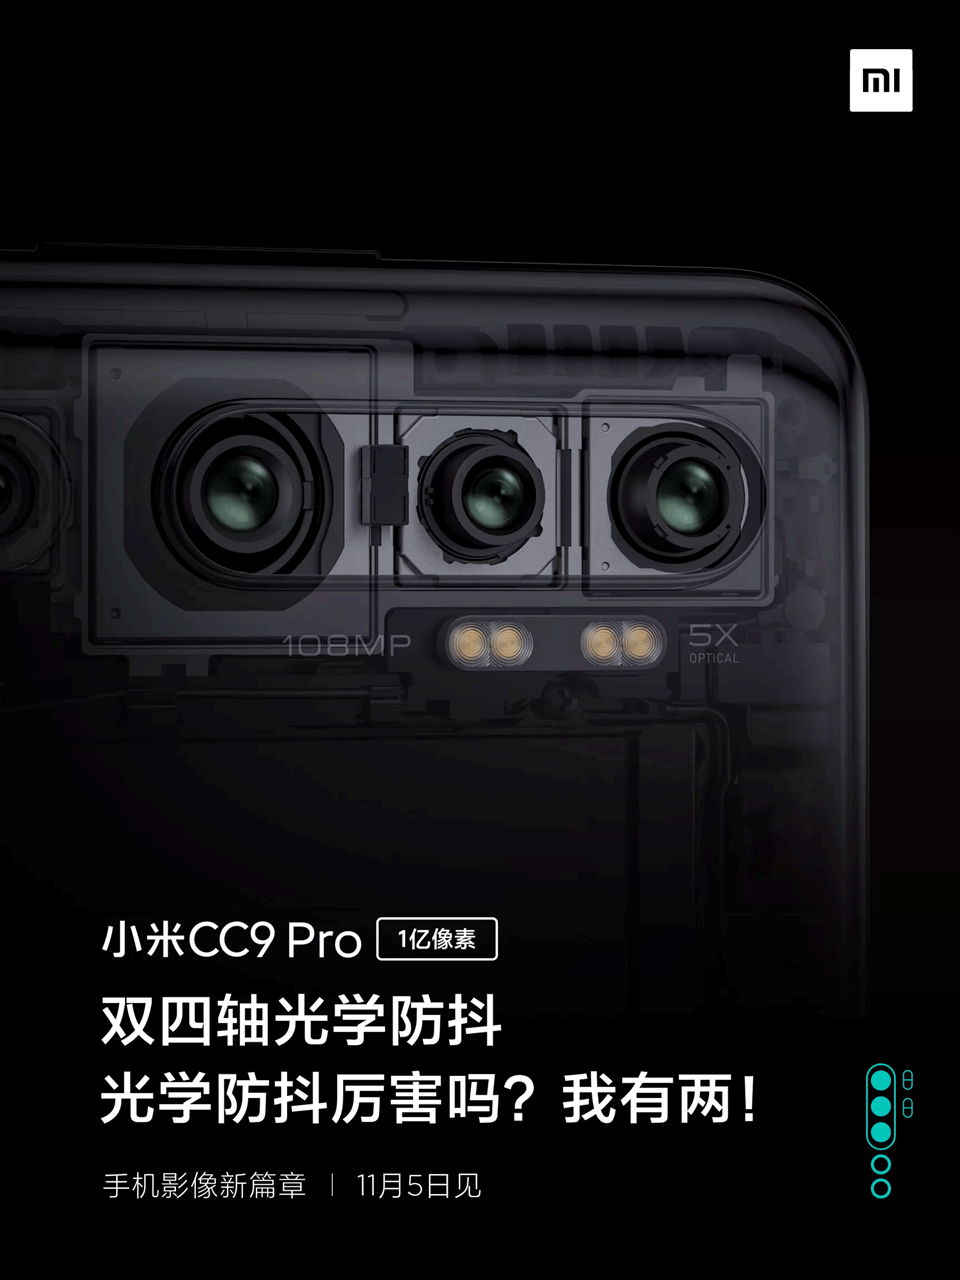 Xiaomi Mi Note 10 dual OS optical image stabilization